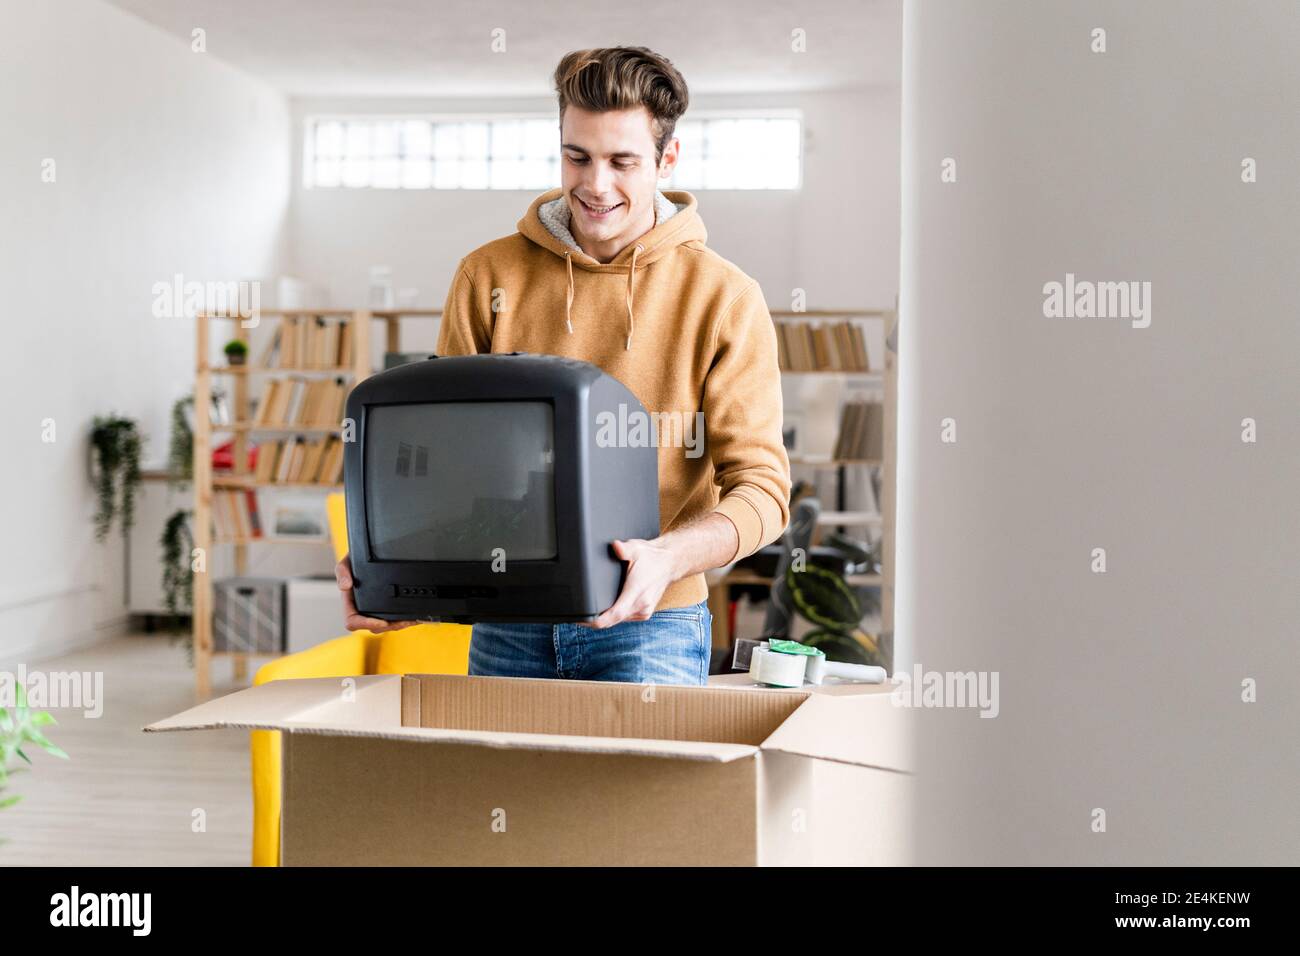 Junger Mann beim Bewegen Fernseher in Pappkarton packen In ein neues Zuhause Stockfoto